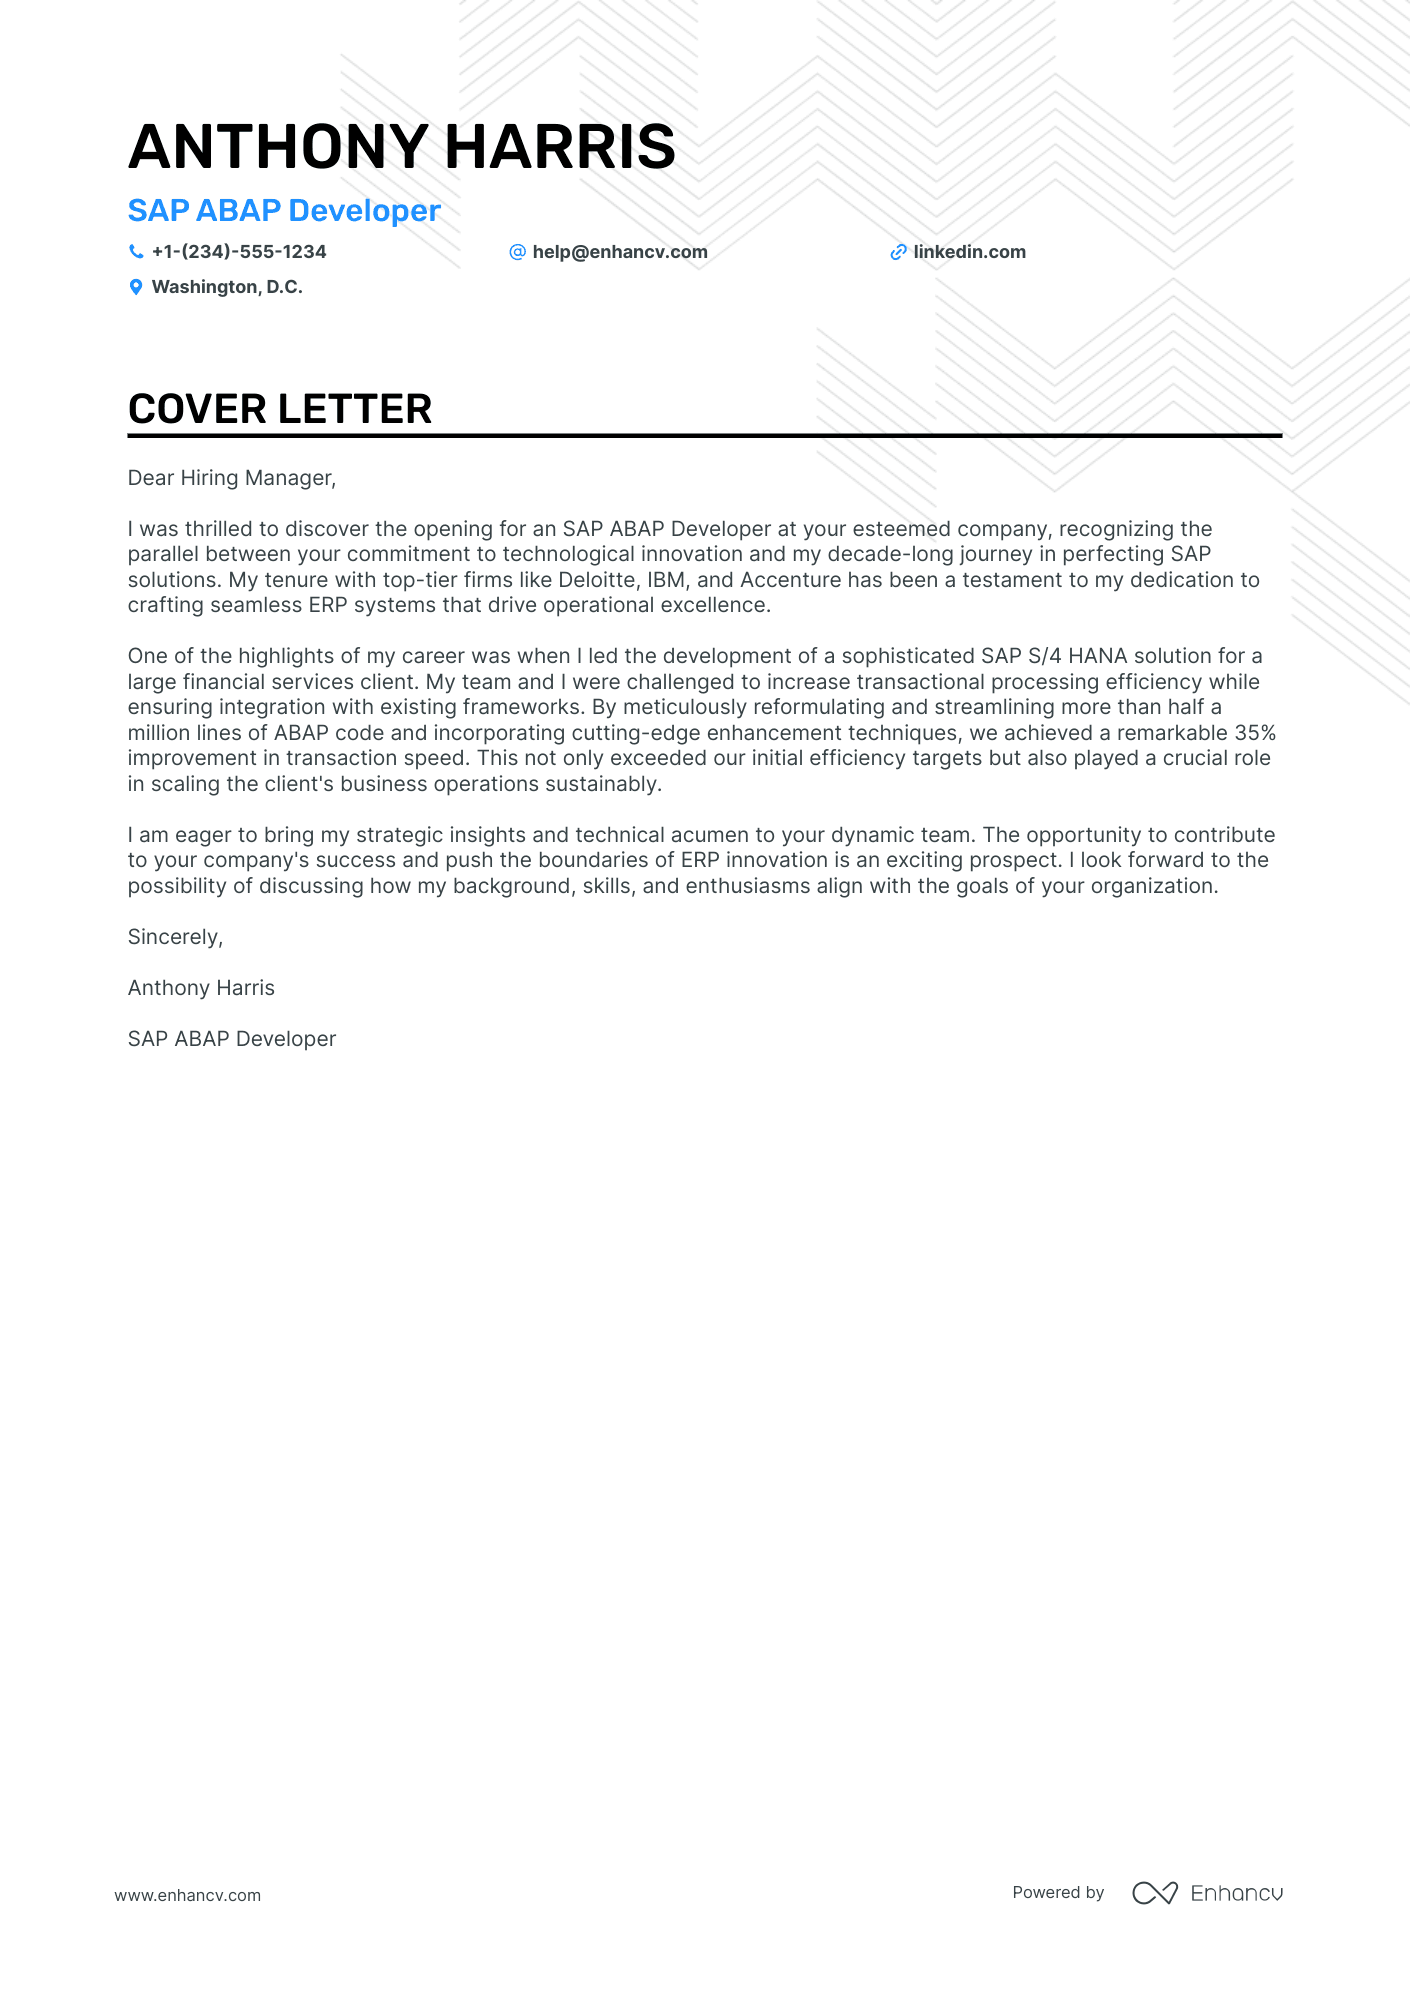 SAP Abap Developer cover letter